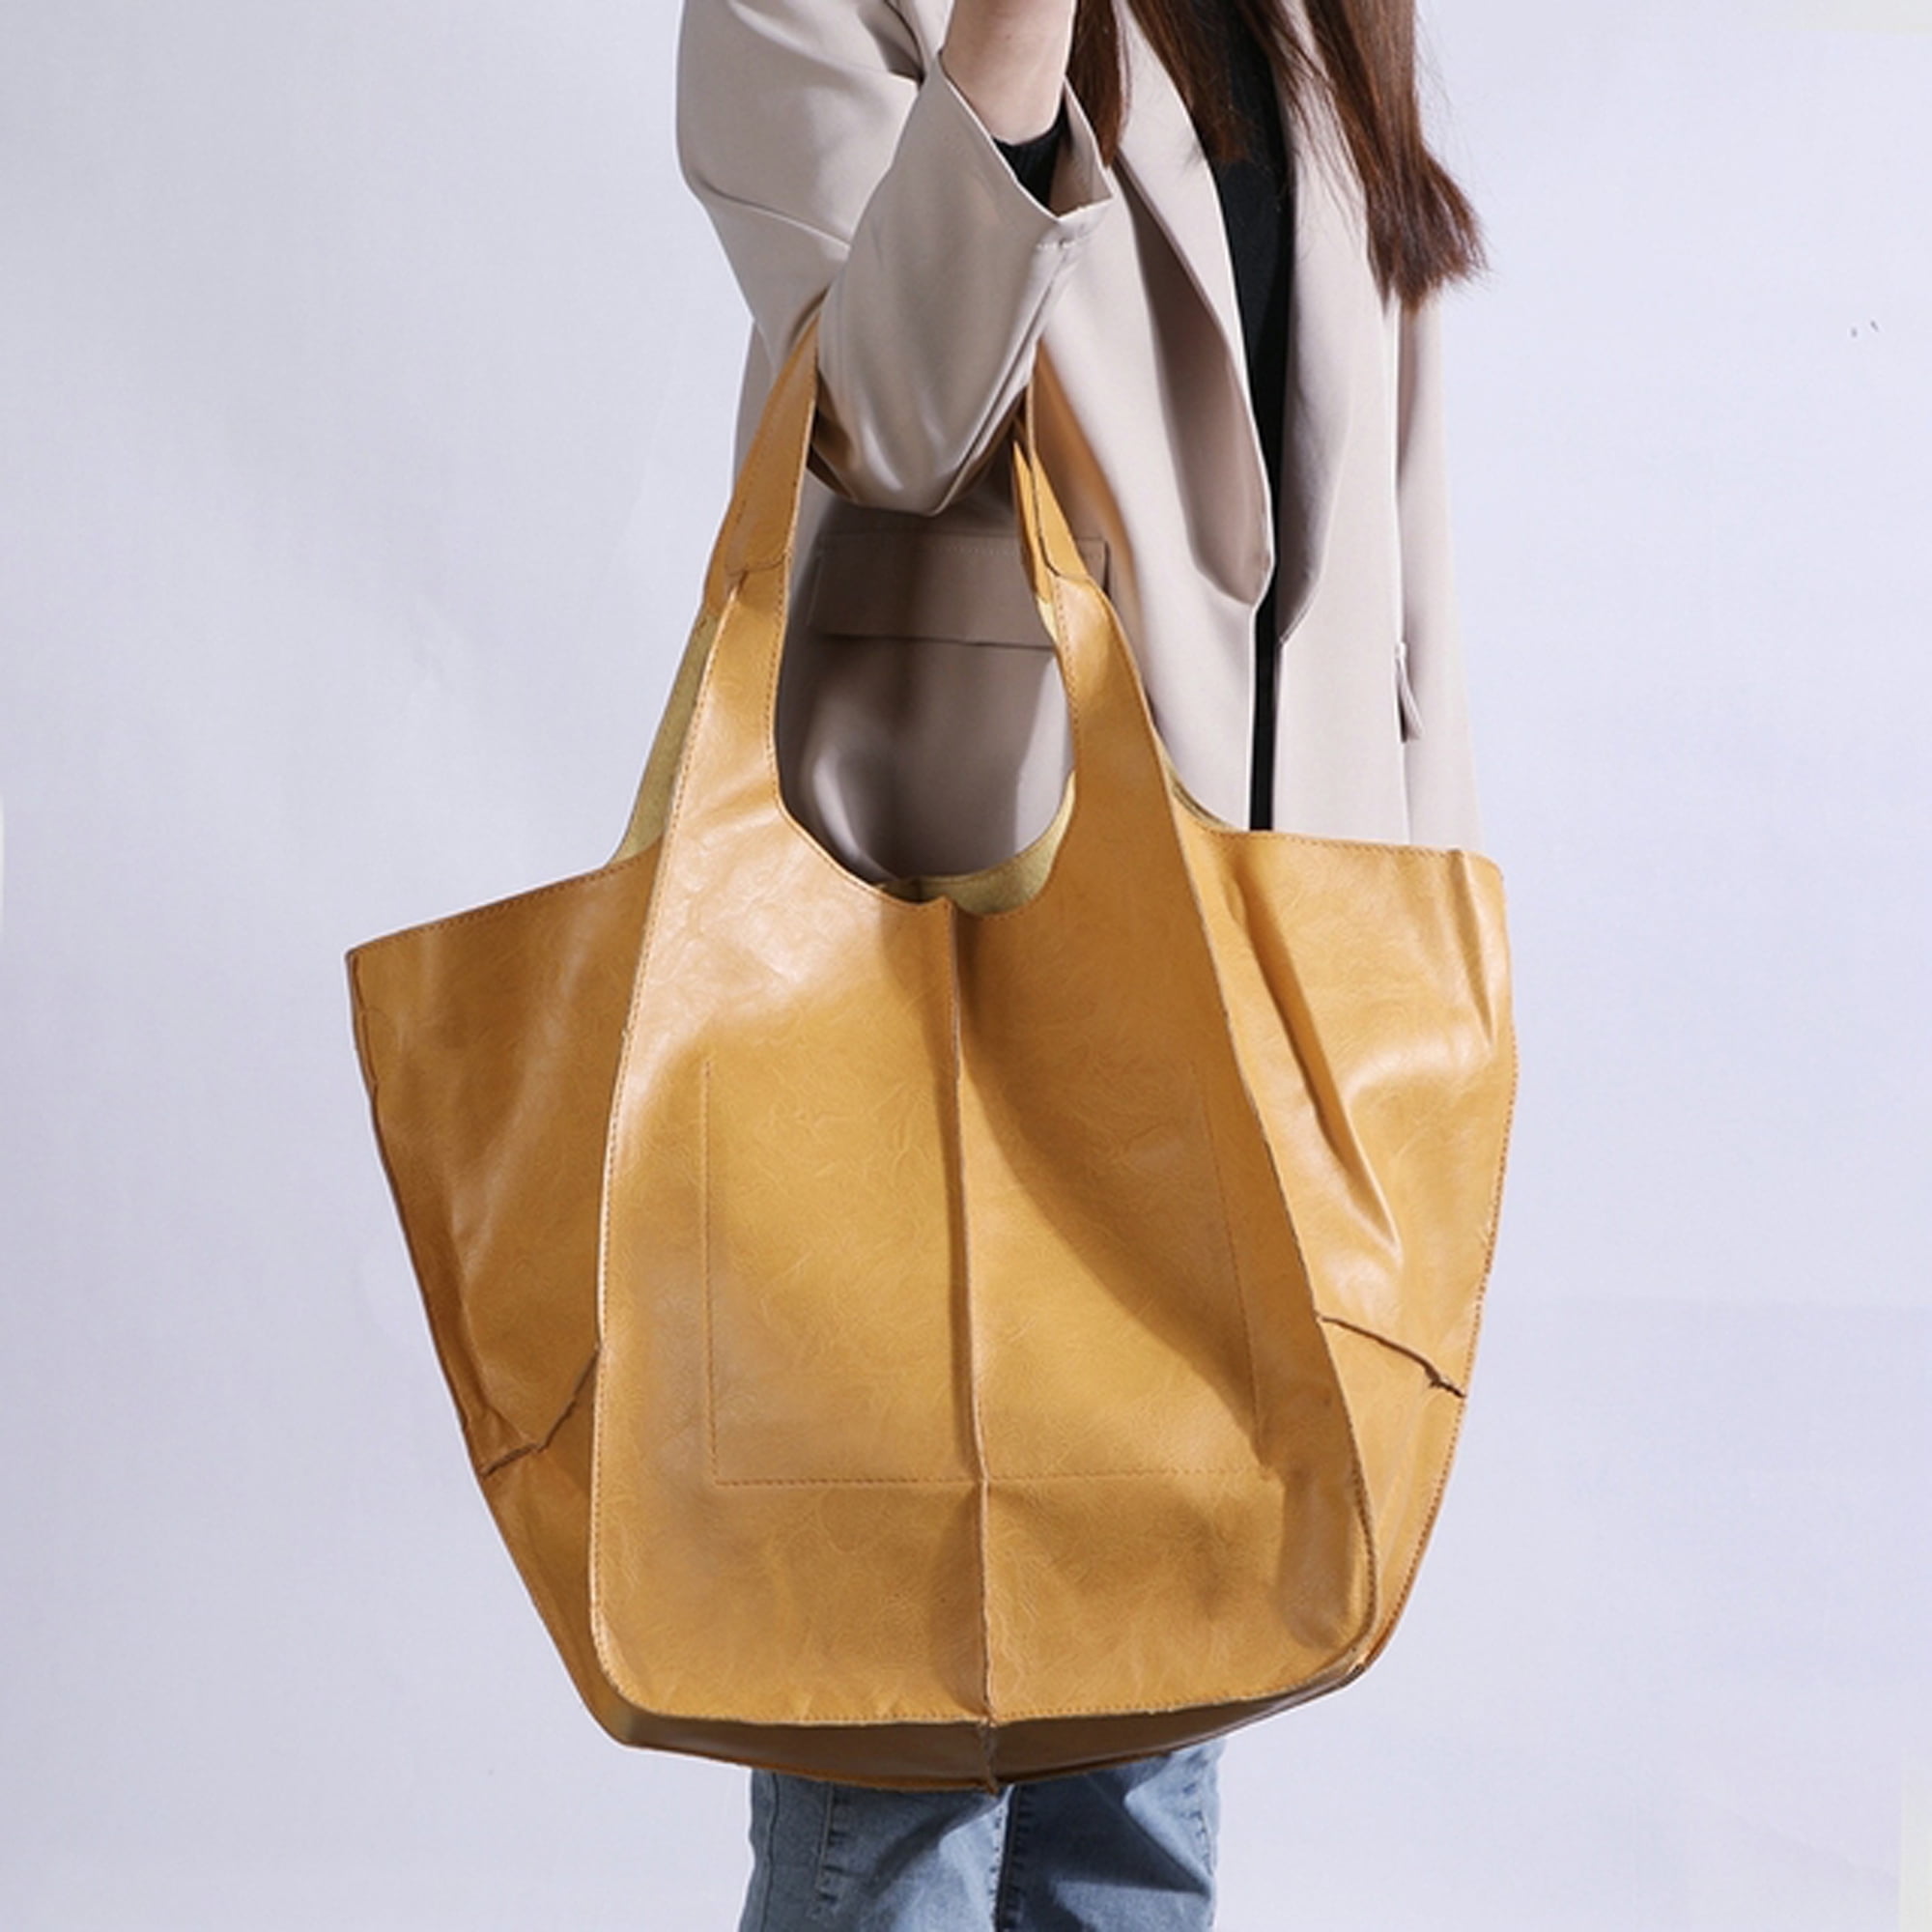 None - Vintage Large Tote Bag Shoulder Bag Handbag Travel Bag on